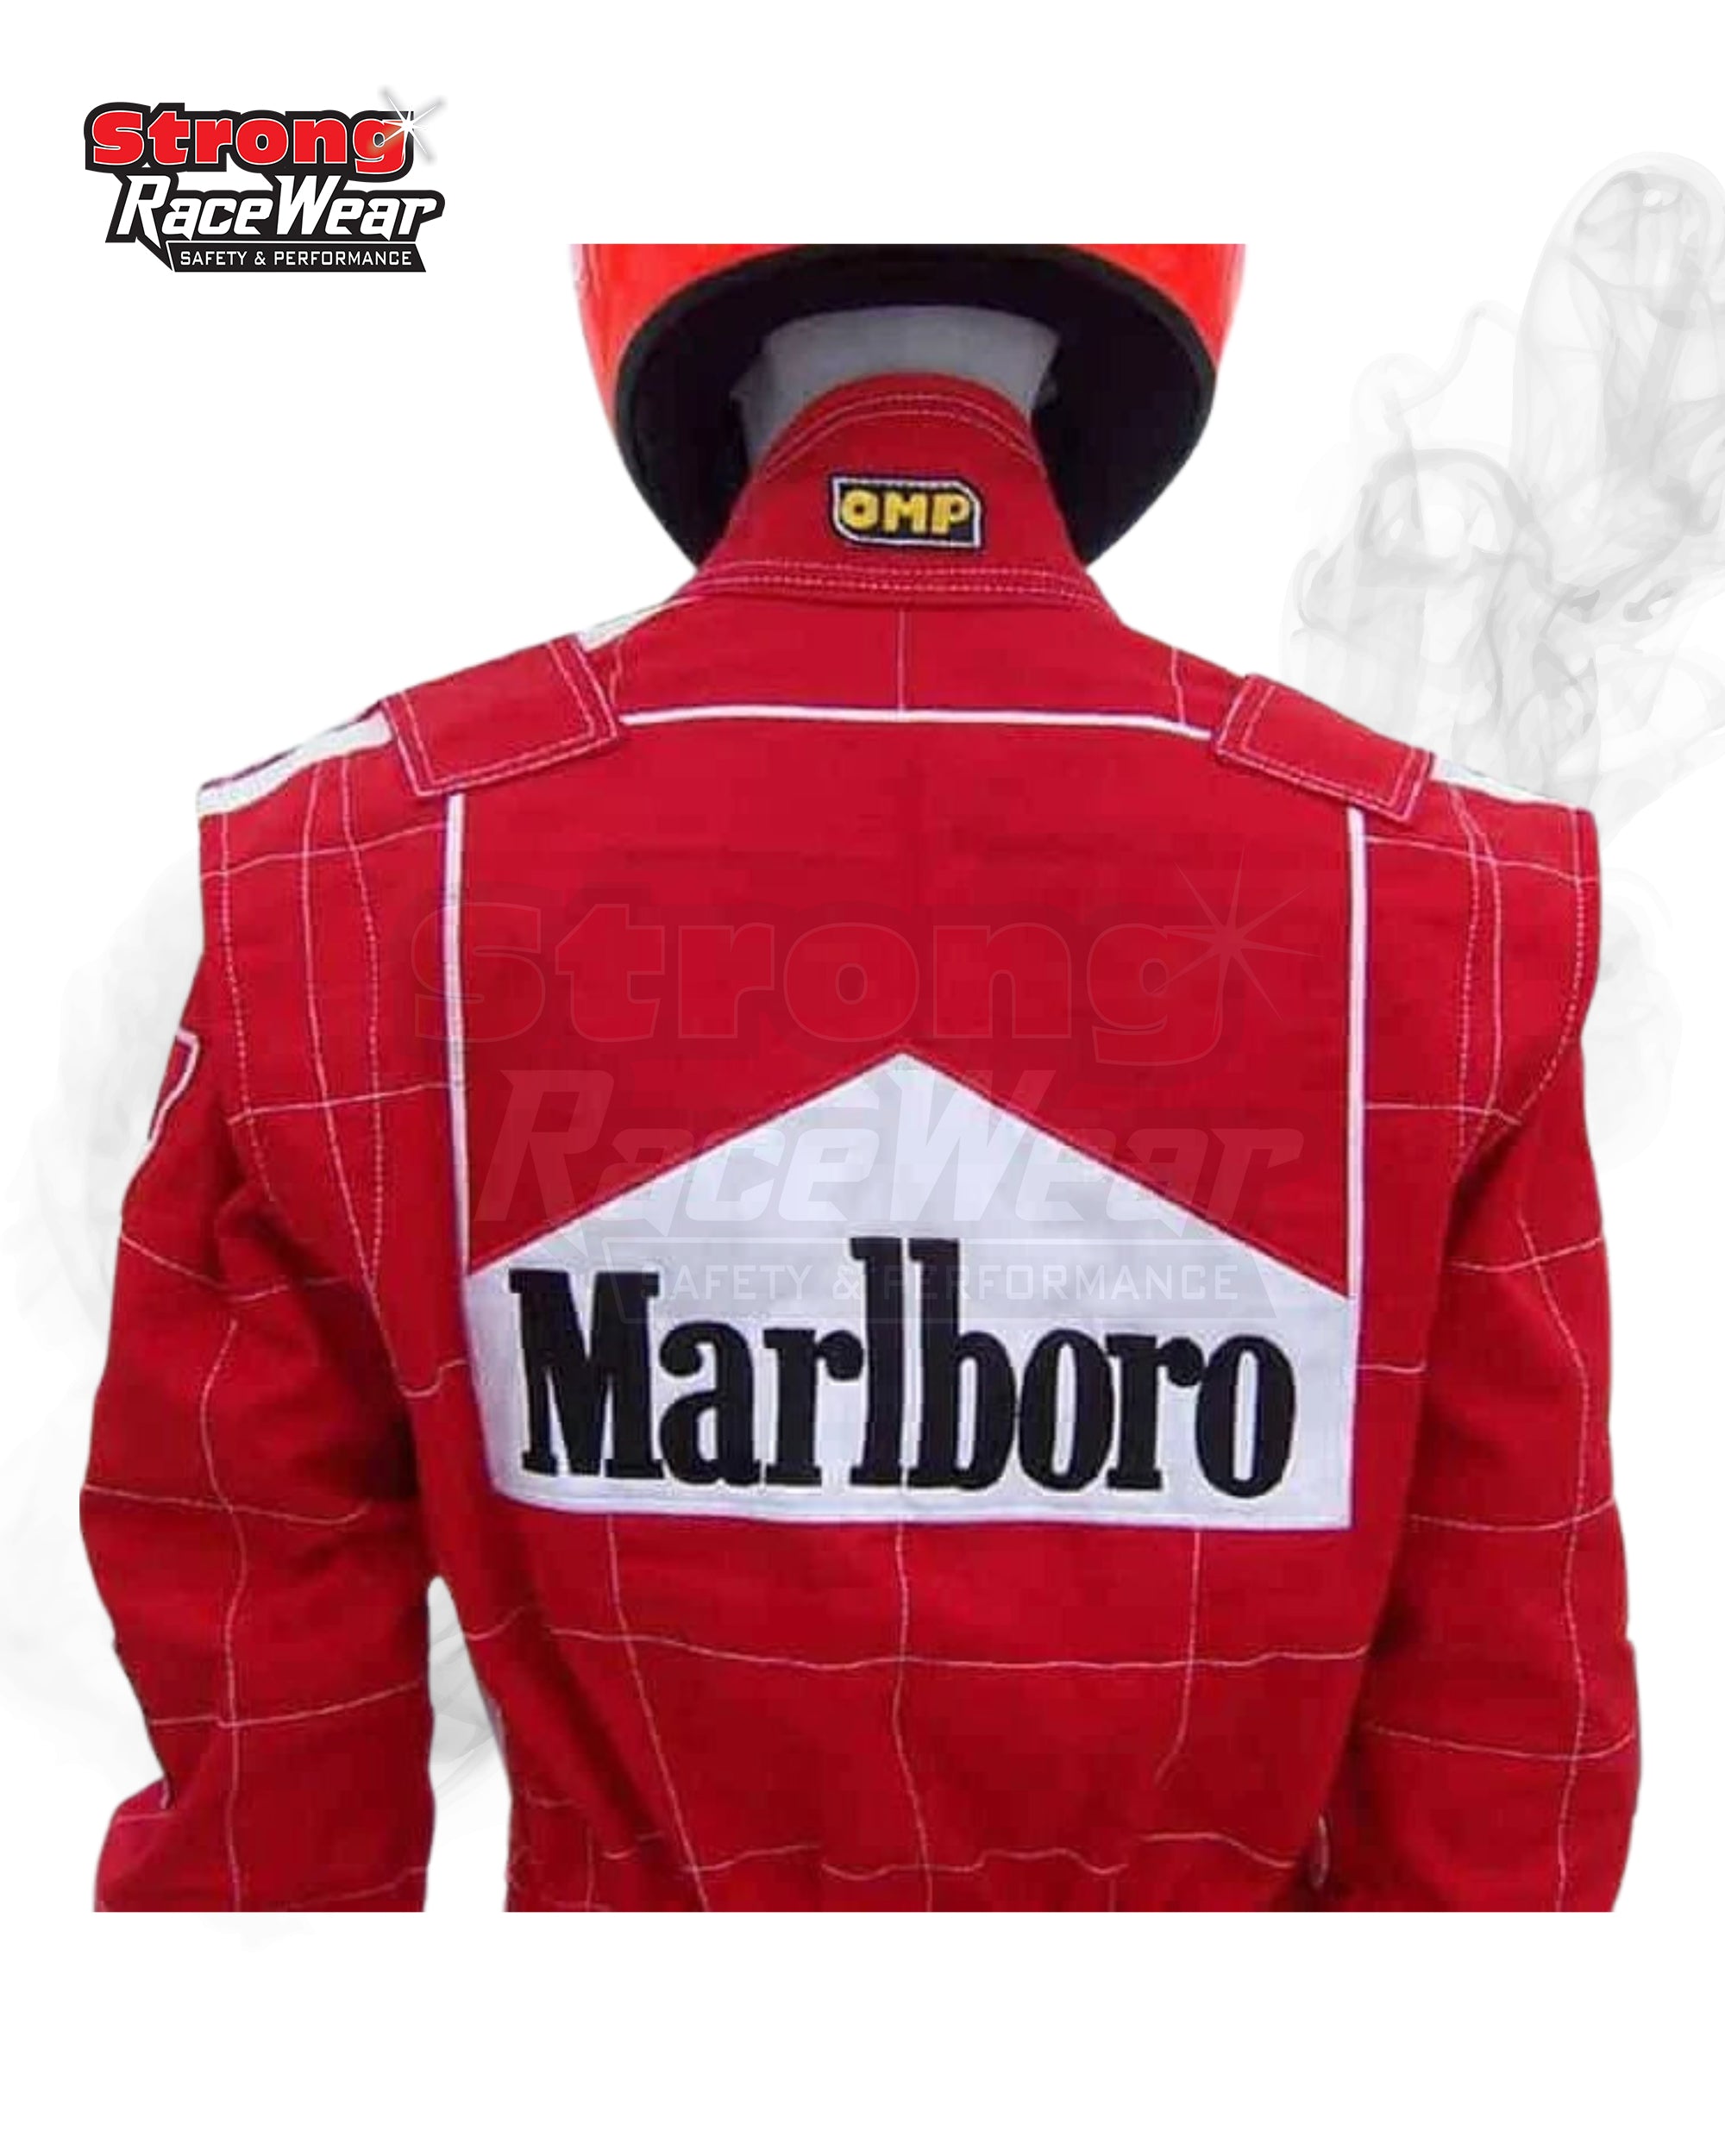 Michael Schumacher 1993 F1 Race Suit